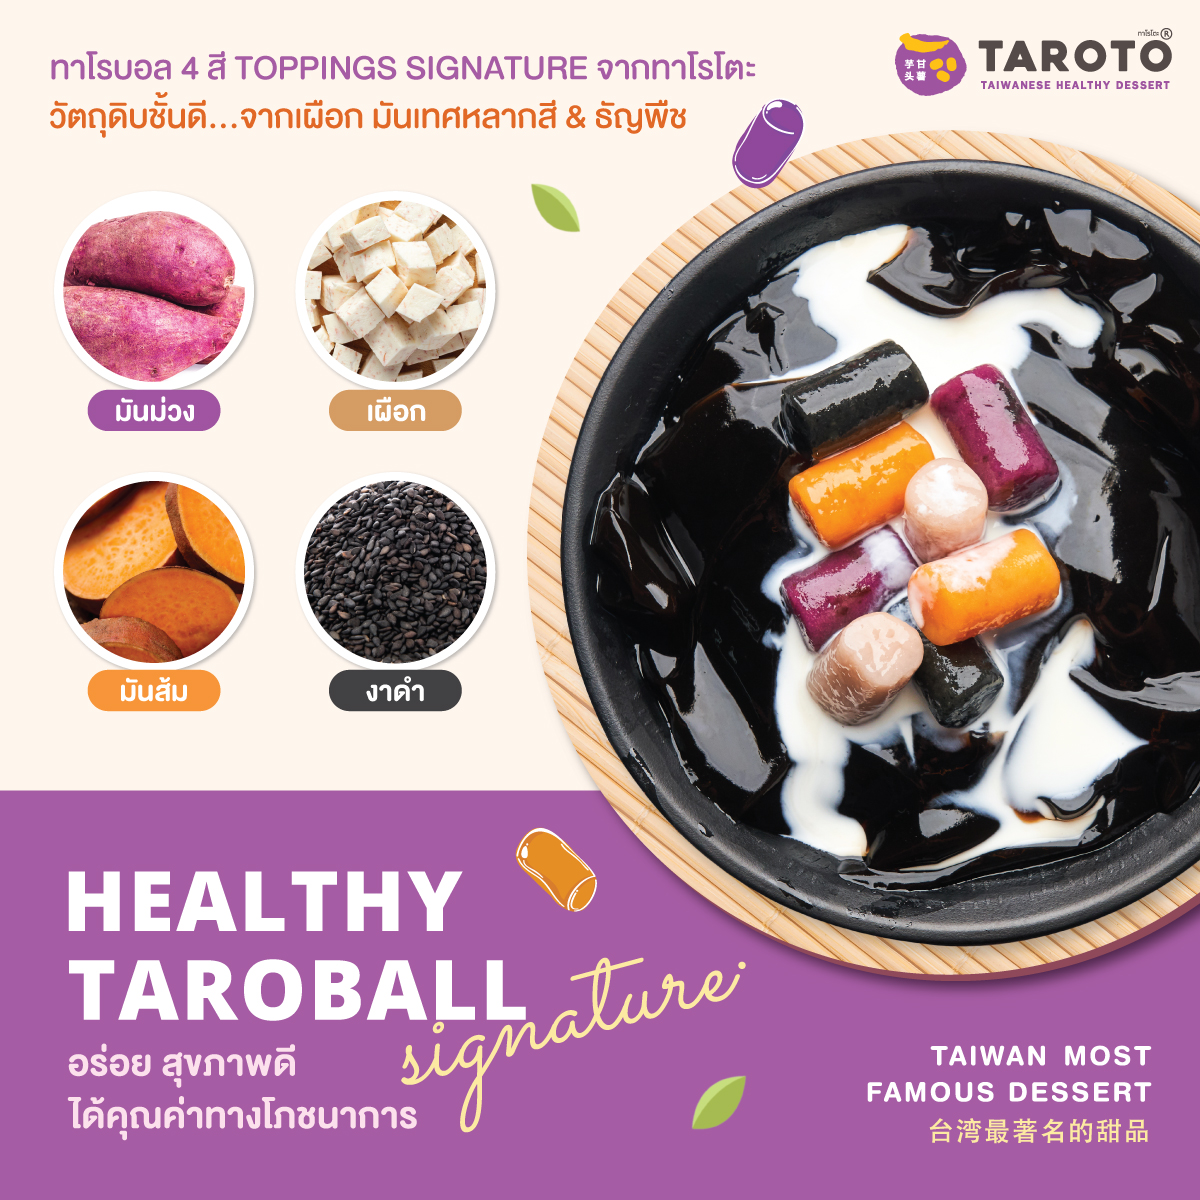 TAROTO Healthy Taroball Signature 